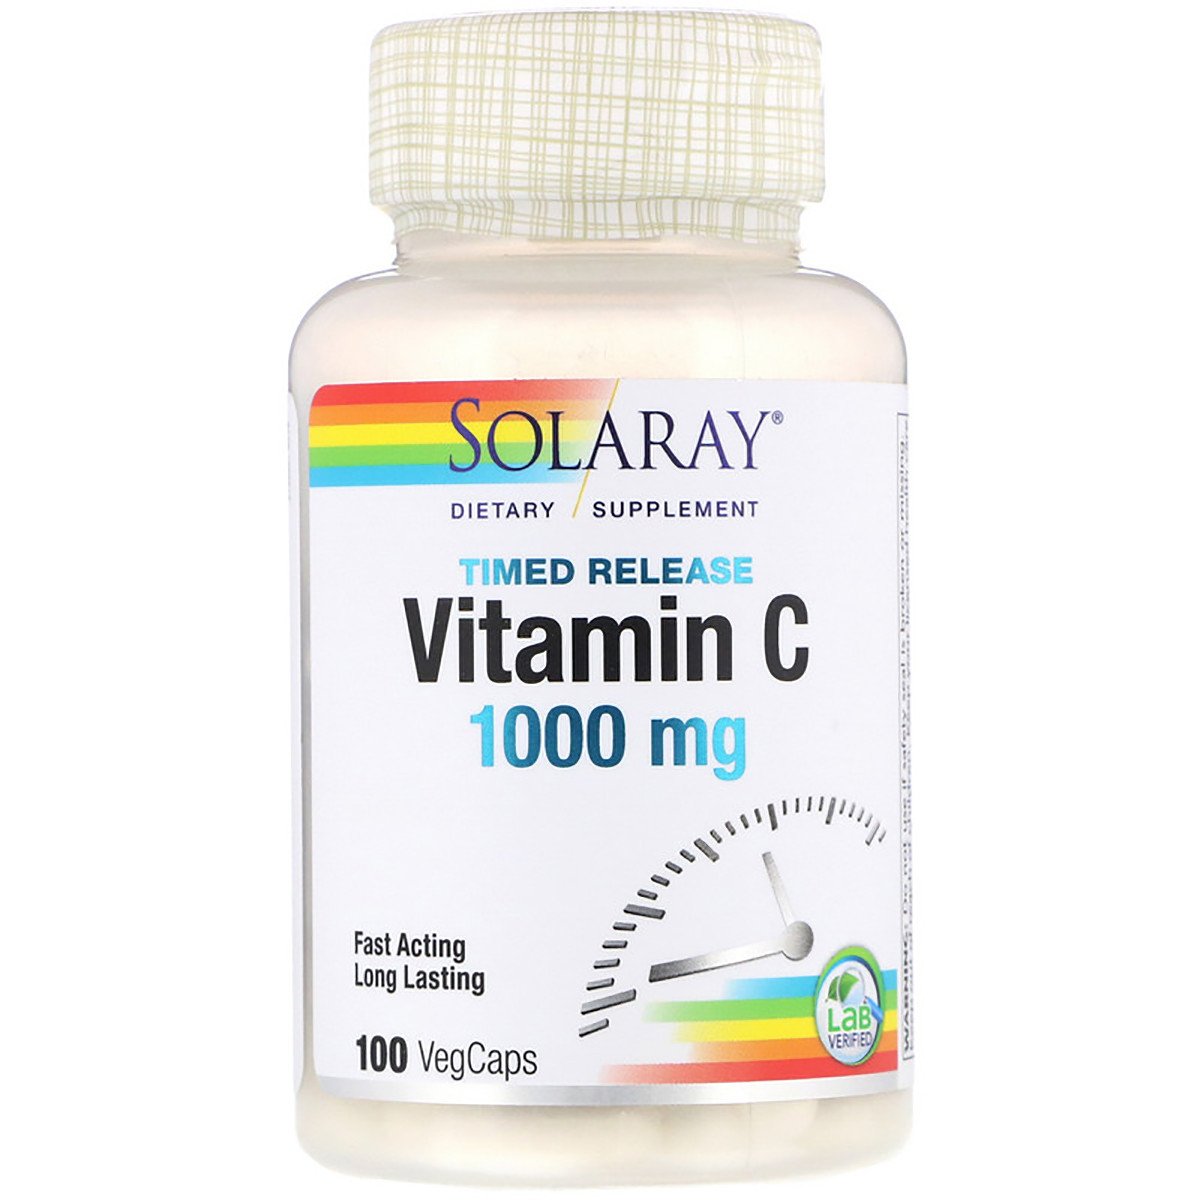 Витамин С Двухфазного Высвобождения, Vitamin C, Solaray, 1000 мг, 100 капсул,  мл, Solaray. Витамин C. Поддержание здоровья Укрепление иммунитета 